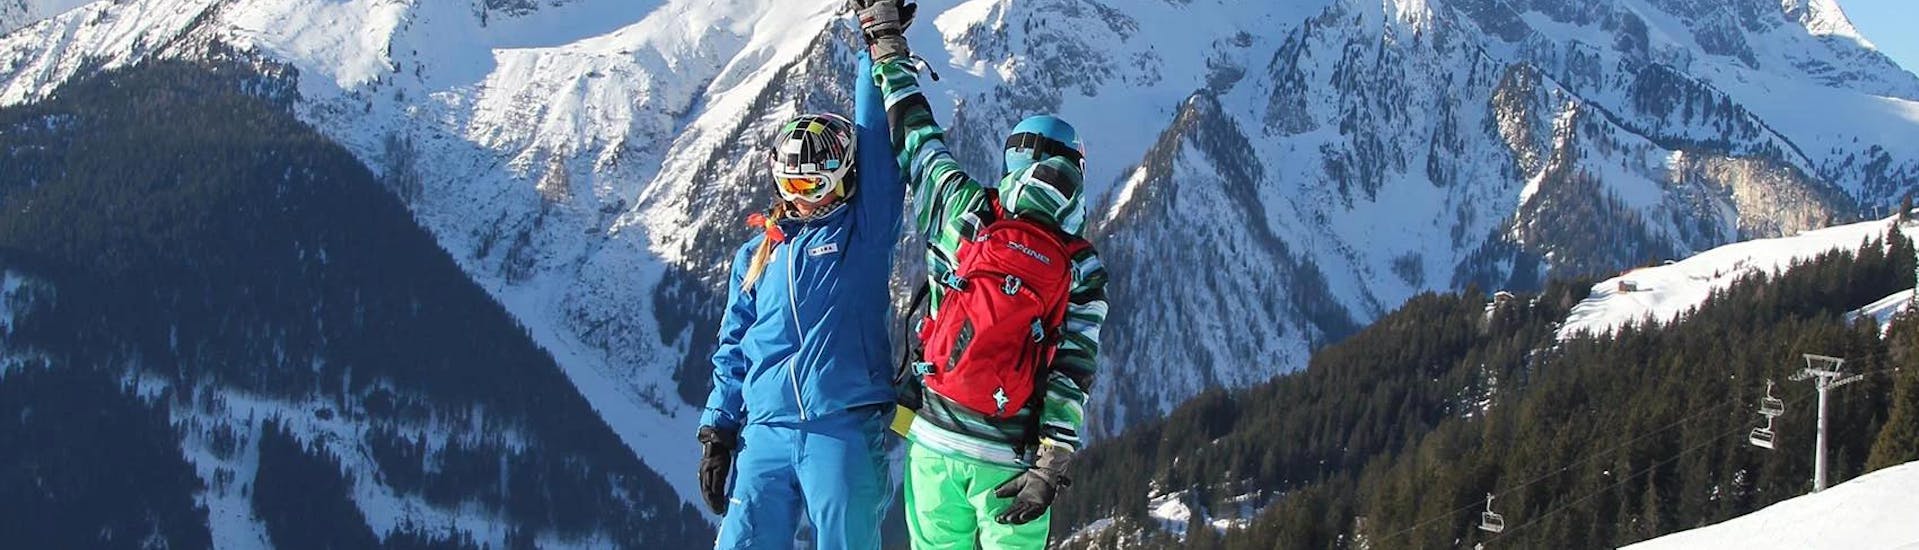 Beim privaten Snowboardkurs der Skischule Habeler Mayrhofen klatscht eine Snowboardlehrerin mit ihrem Schüler ab.